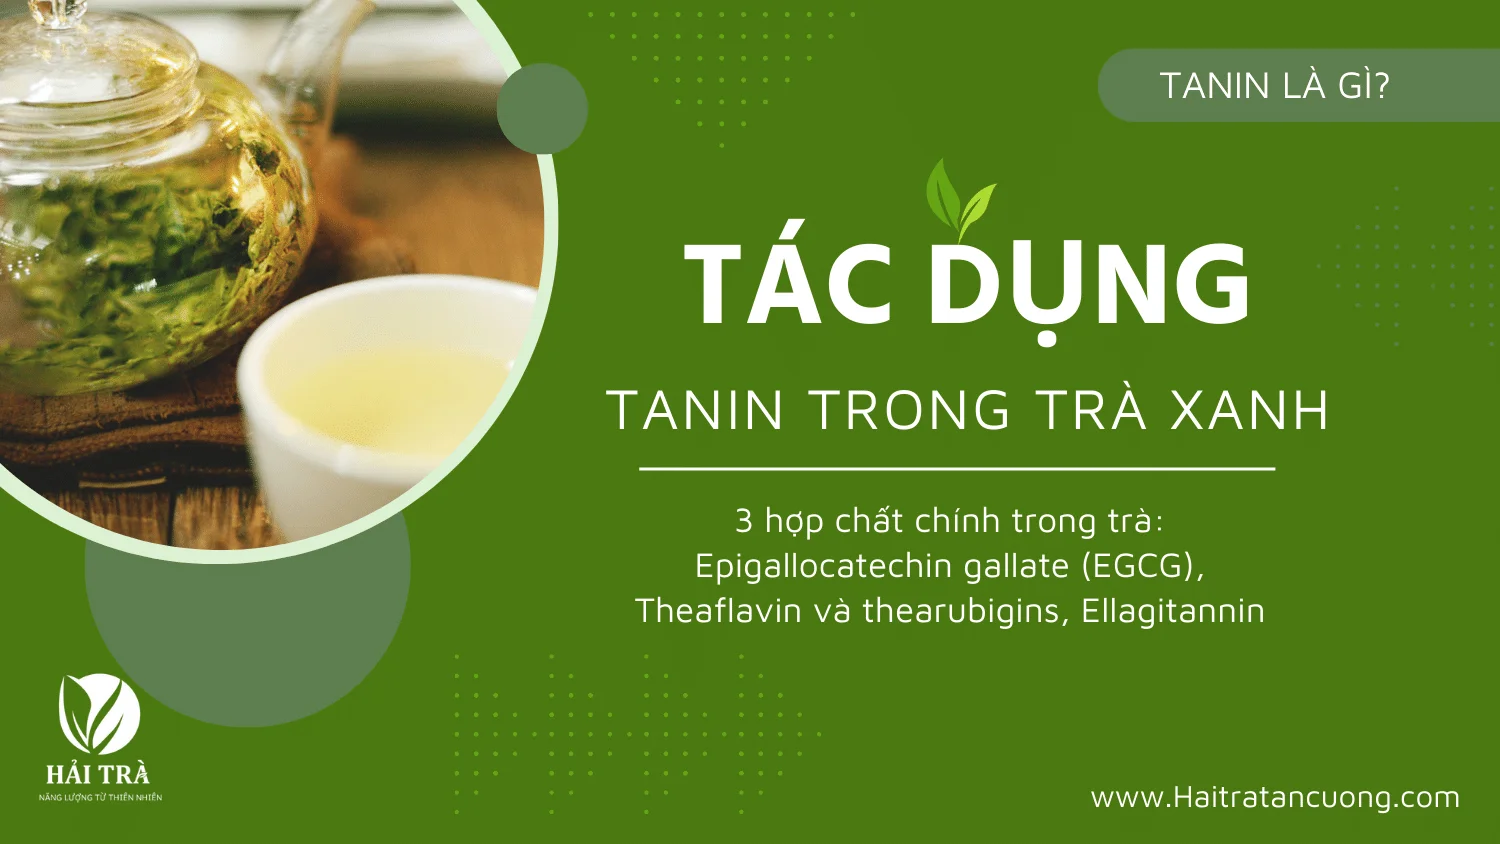 Tannin là gì? Hợp chất tanin trong trà có tác dụng gì